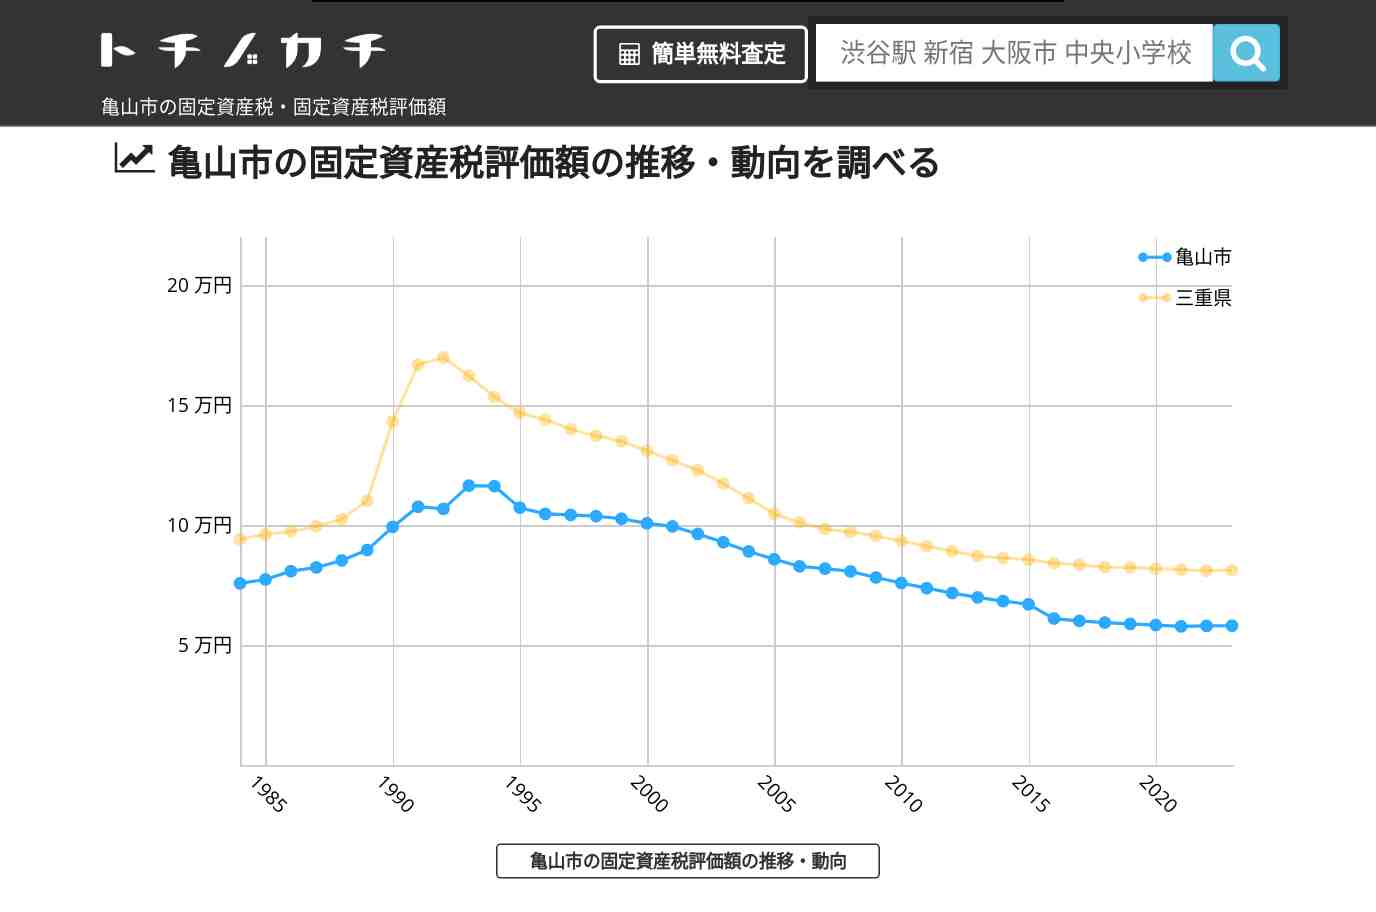 中部中学校(三重県 亀山市)周辺の固定資産税・固定資産税評価額 | トチノカチ